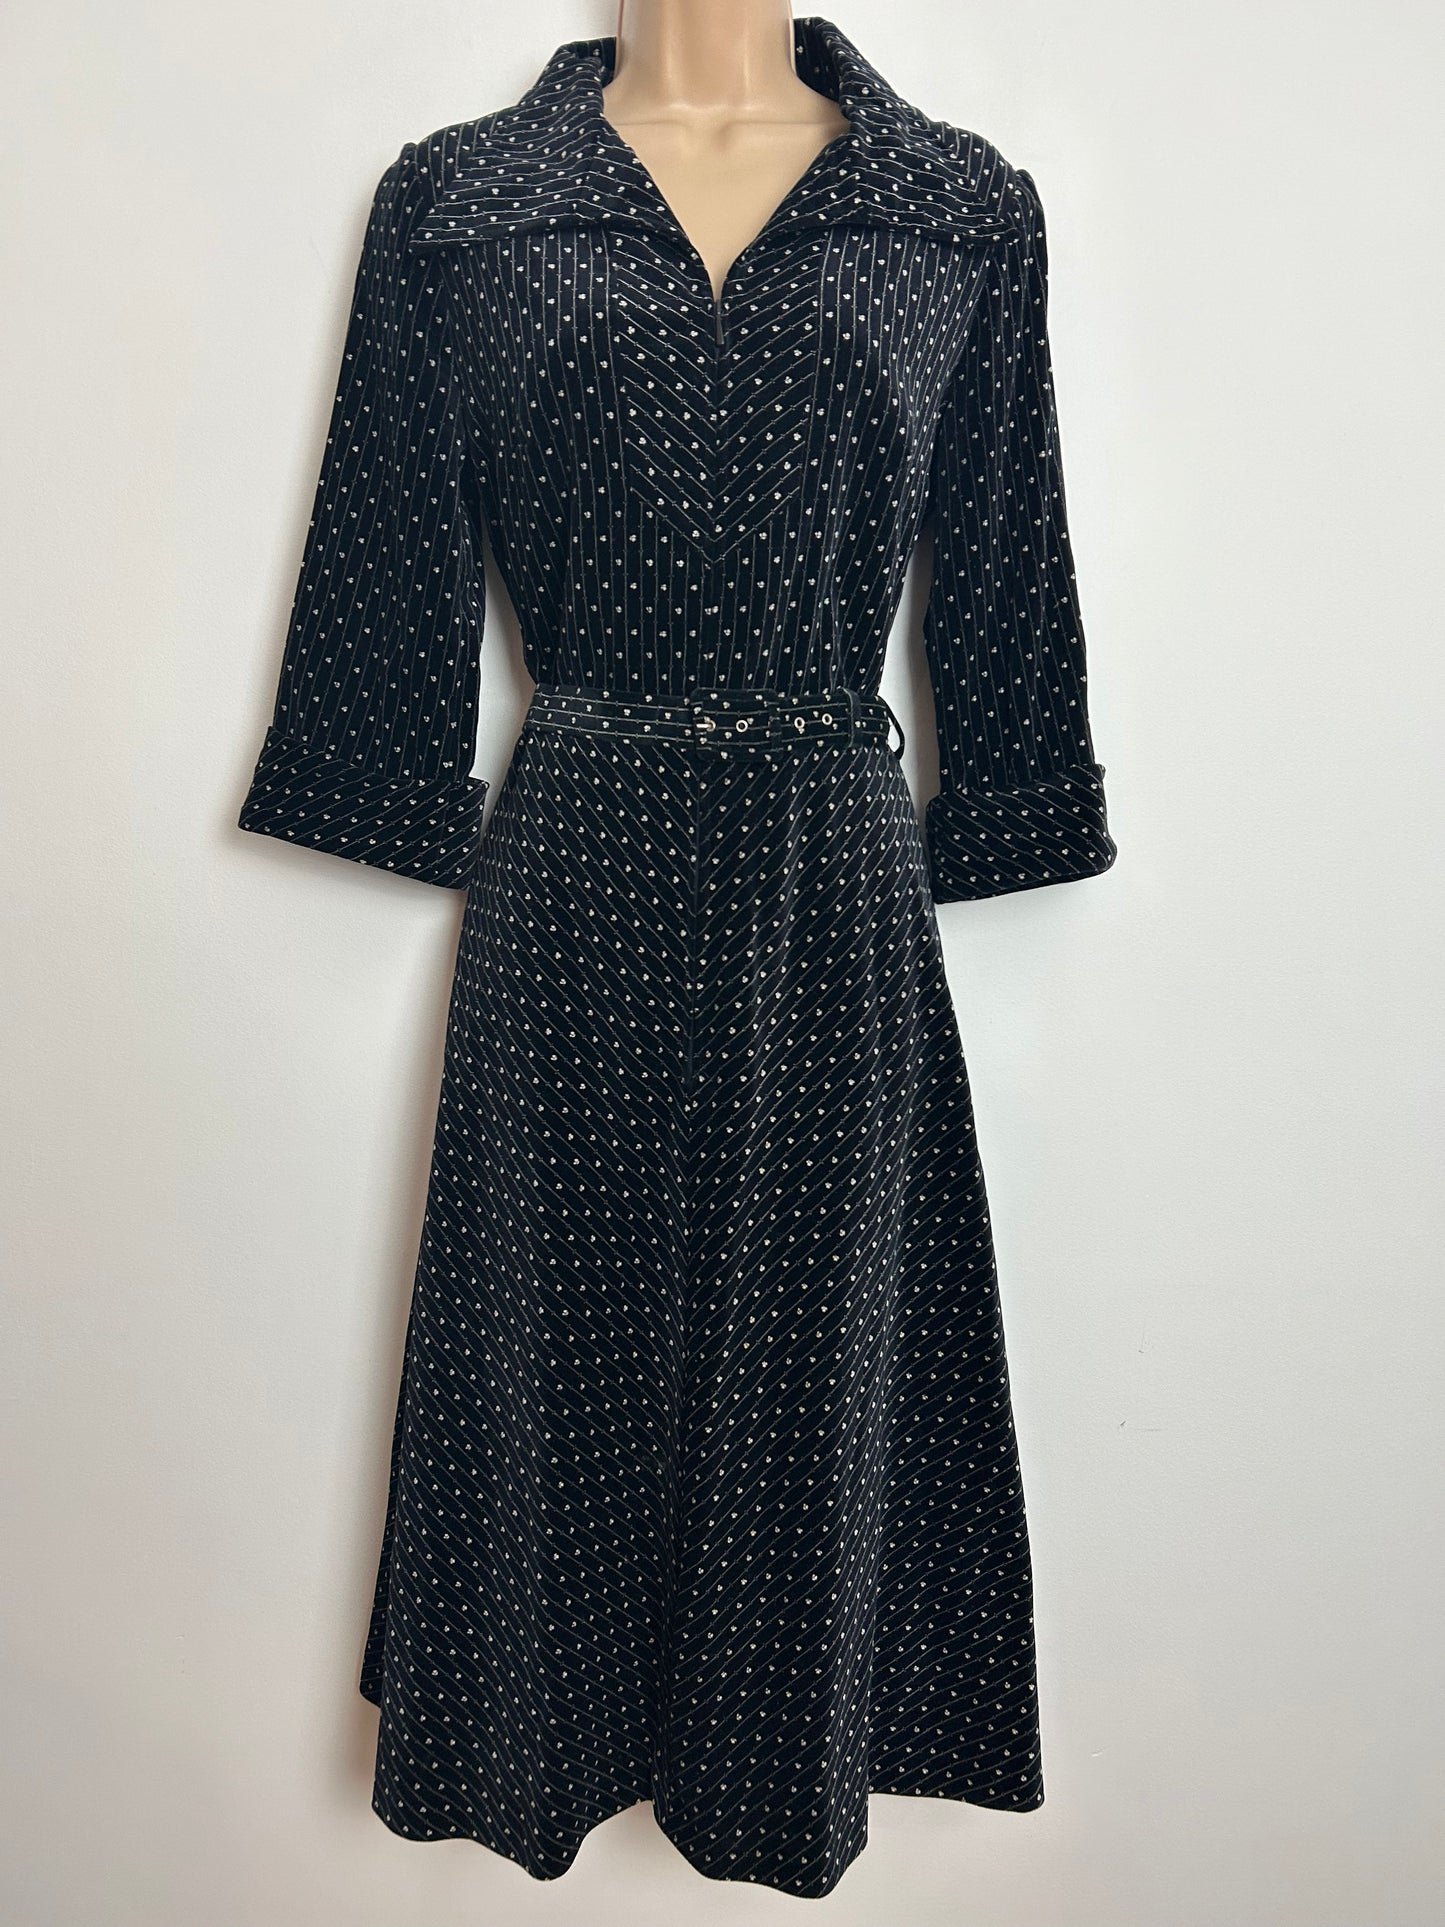 Vintage Late 1970s UK Size 14 Black & White Velvet Stripe & Floral Print 3/4 Sleeve Belted Fit & Flare Dress